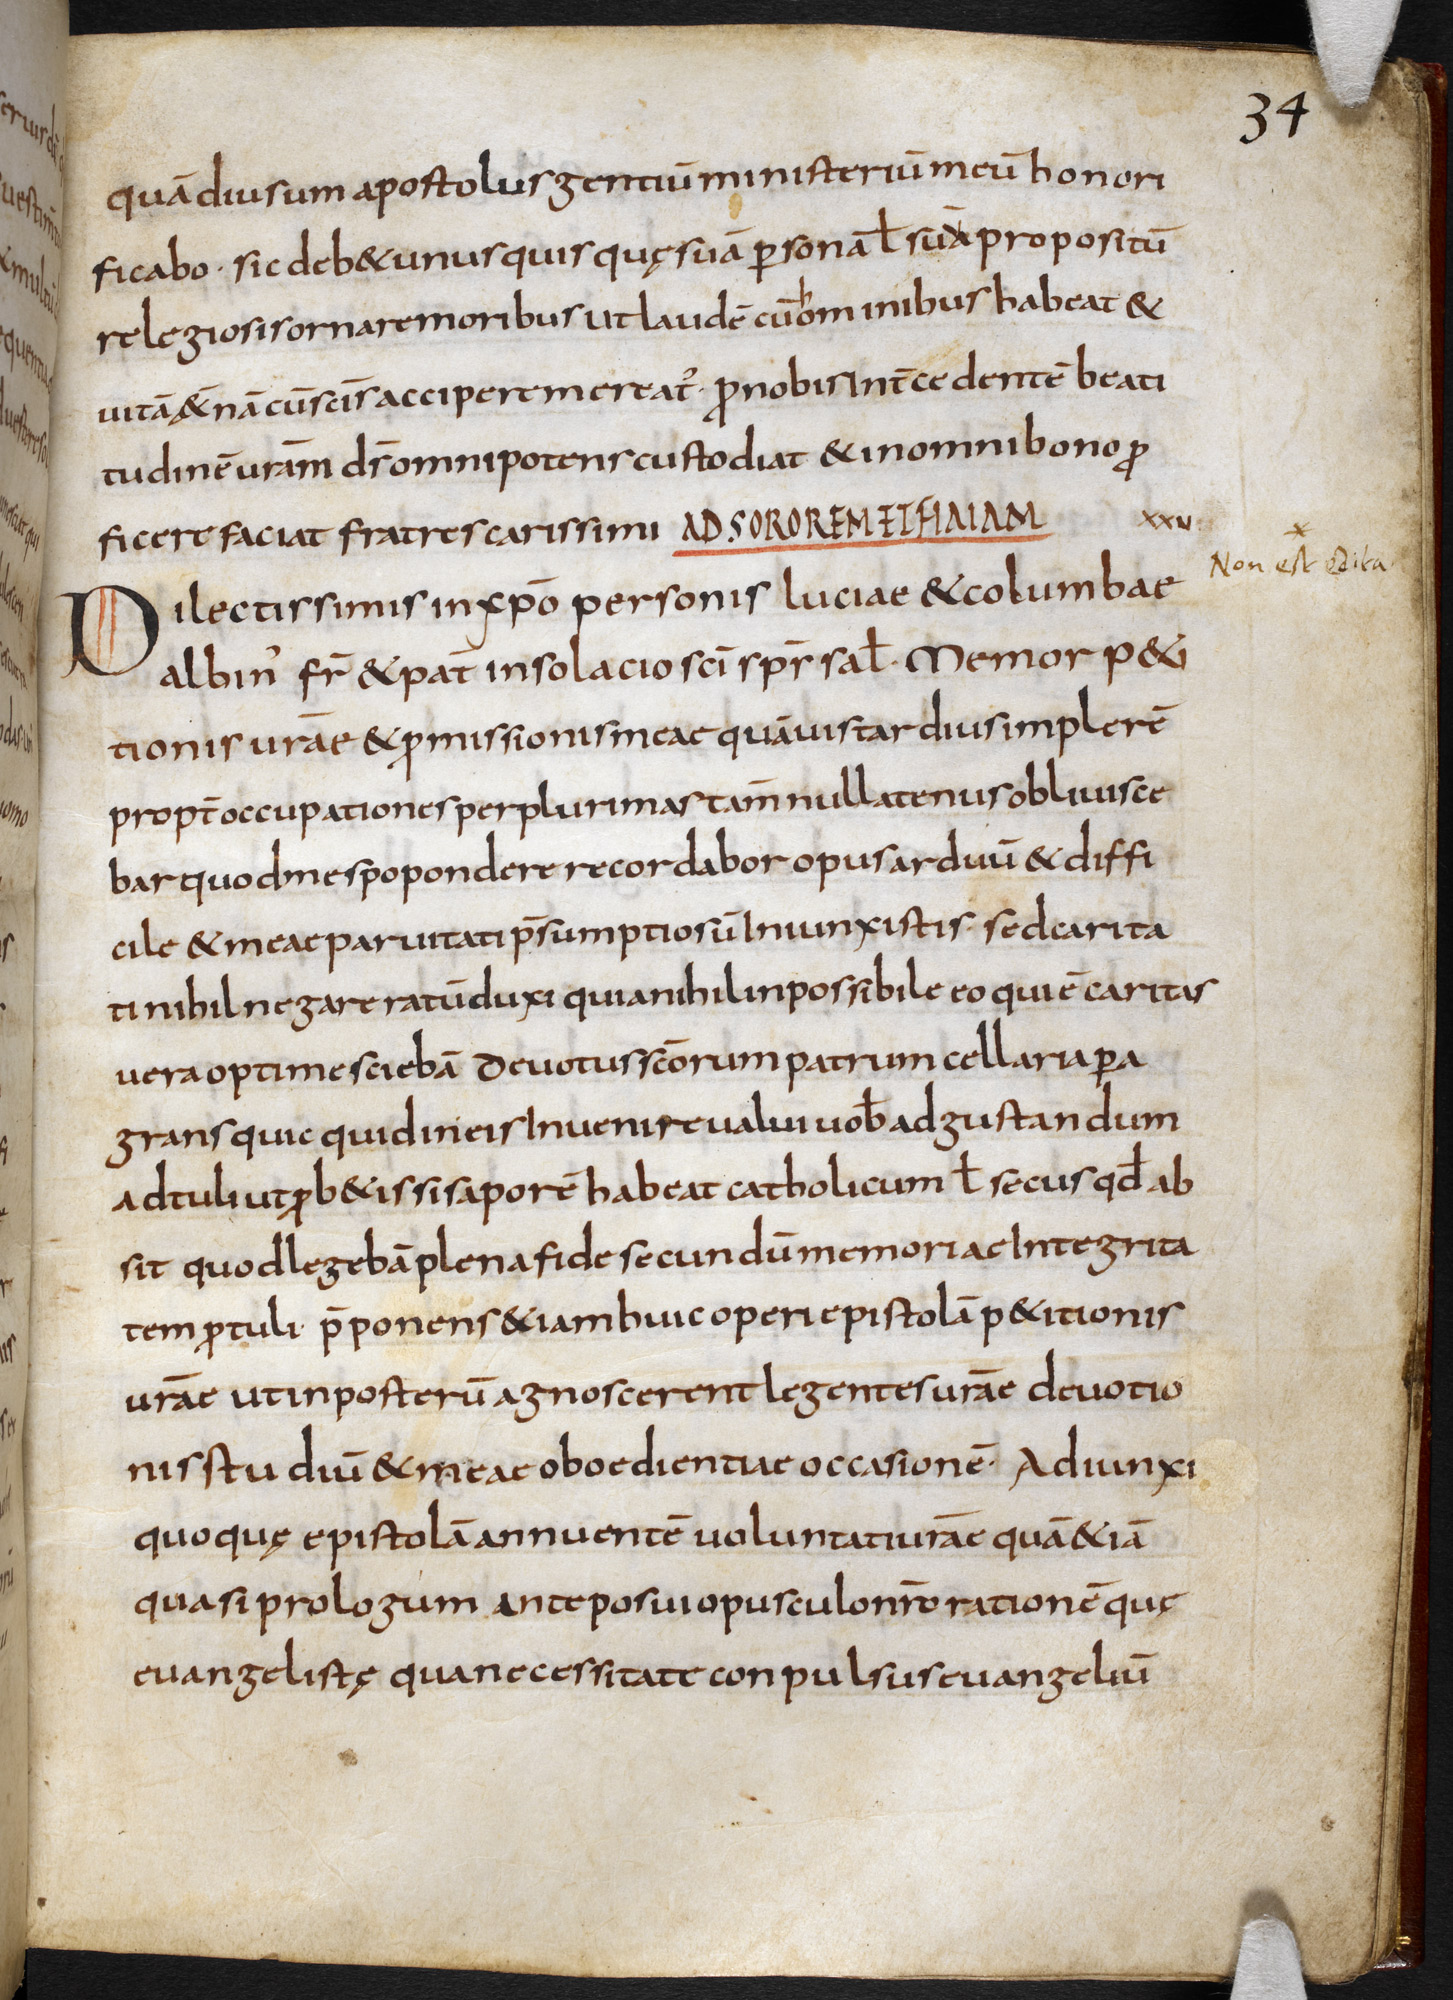  Recueil de lettres d’Alcuin Created: 1er quart du IXe siècle, Saint-Denis 